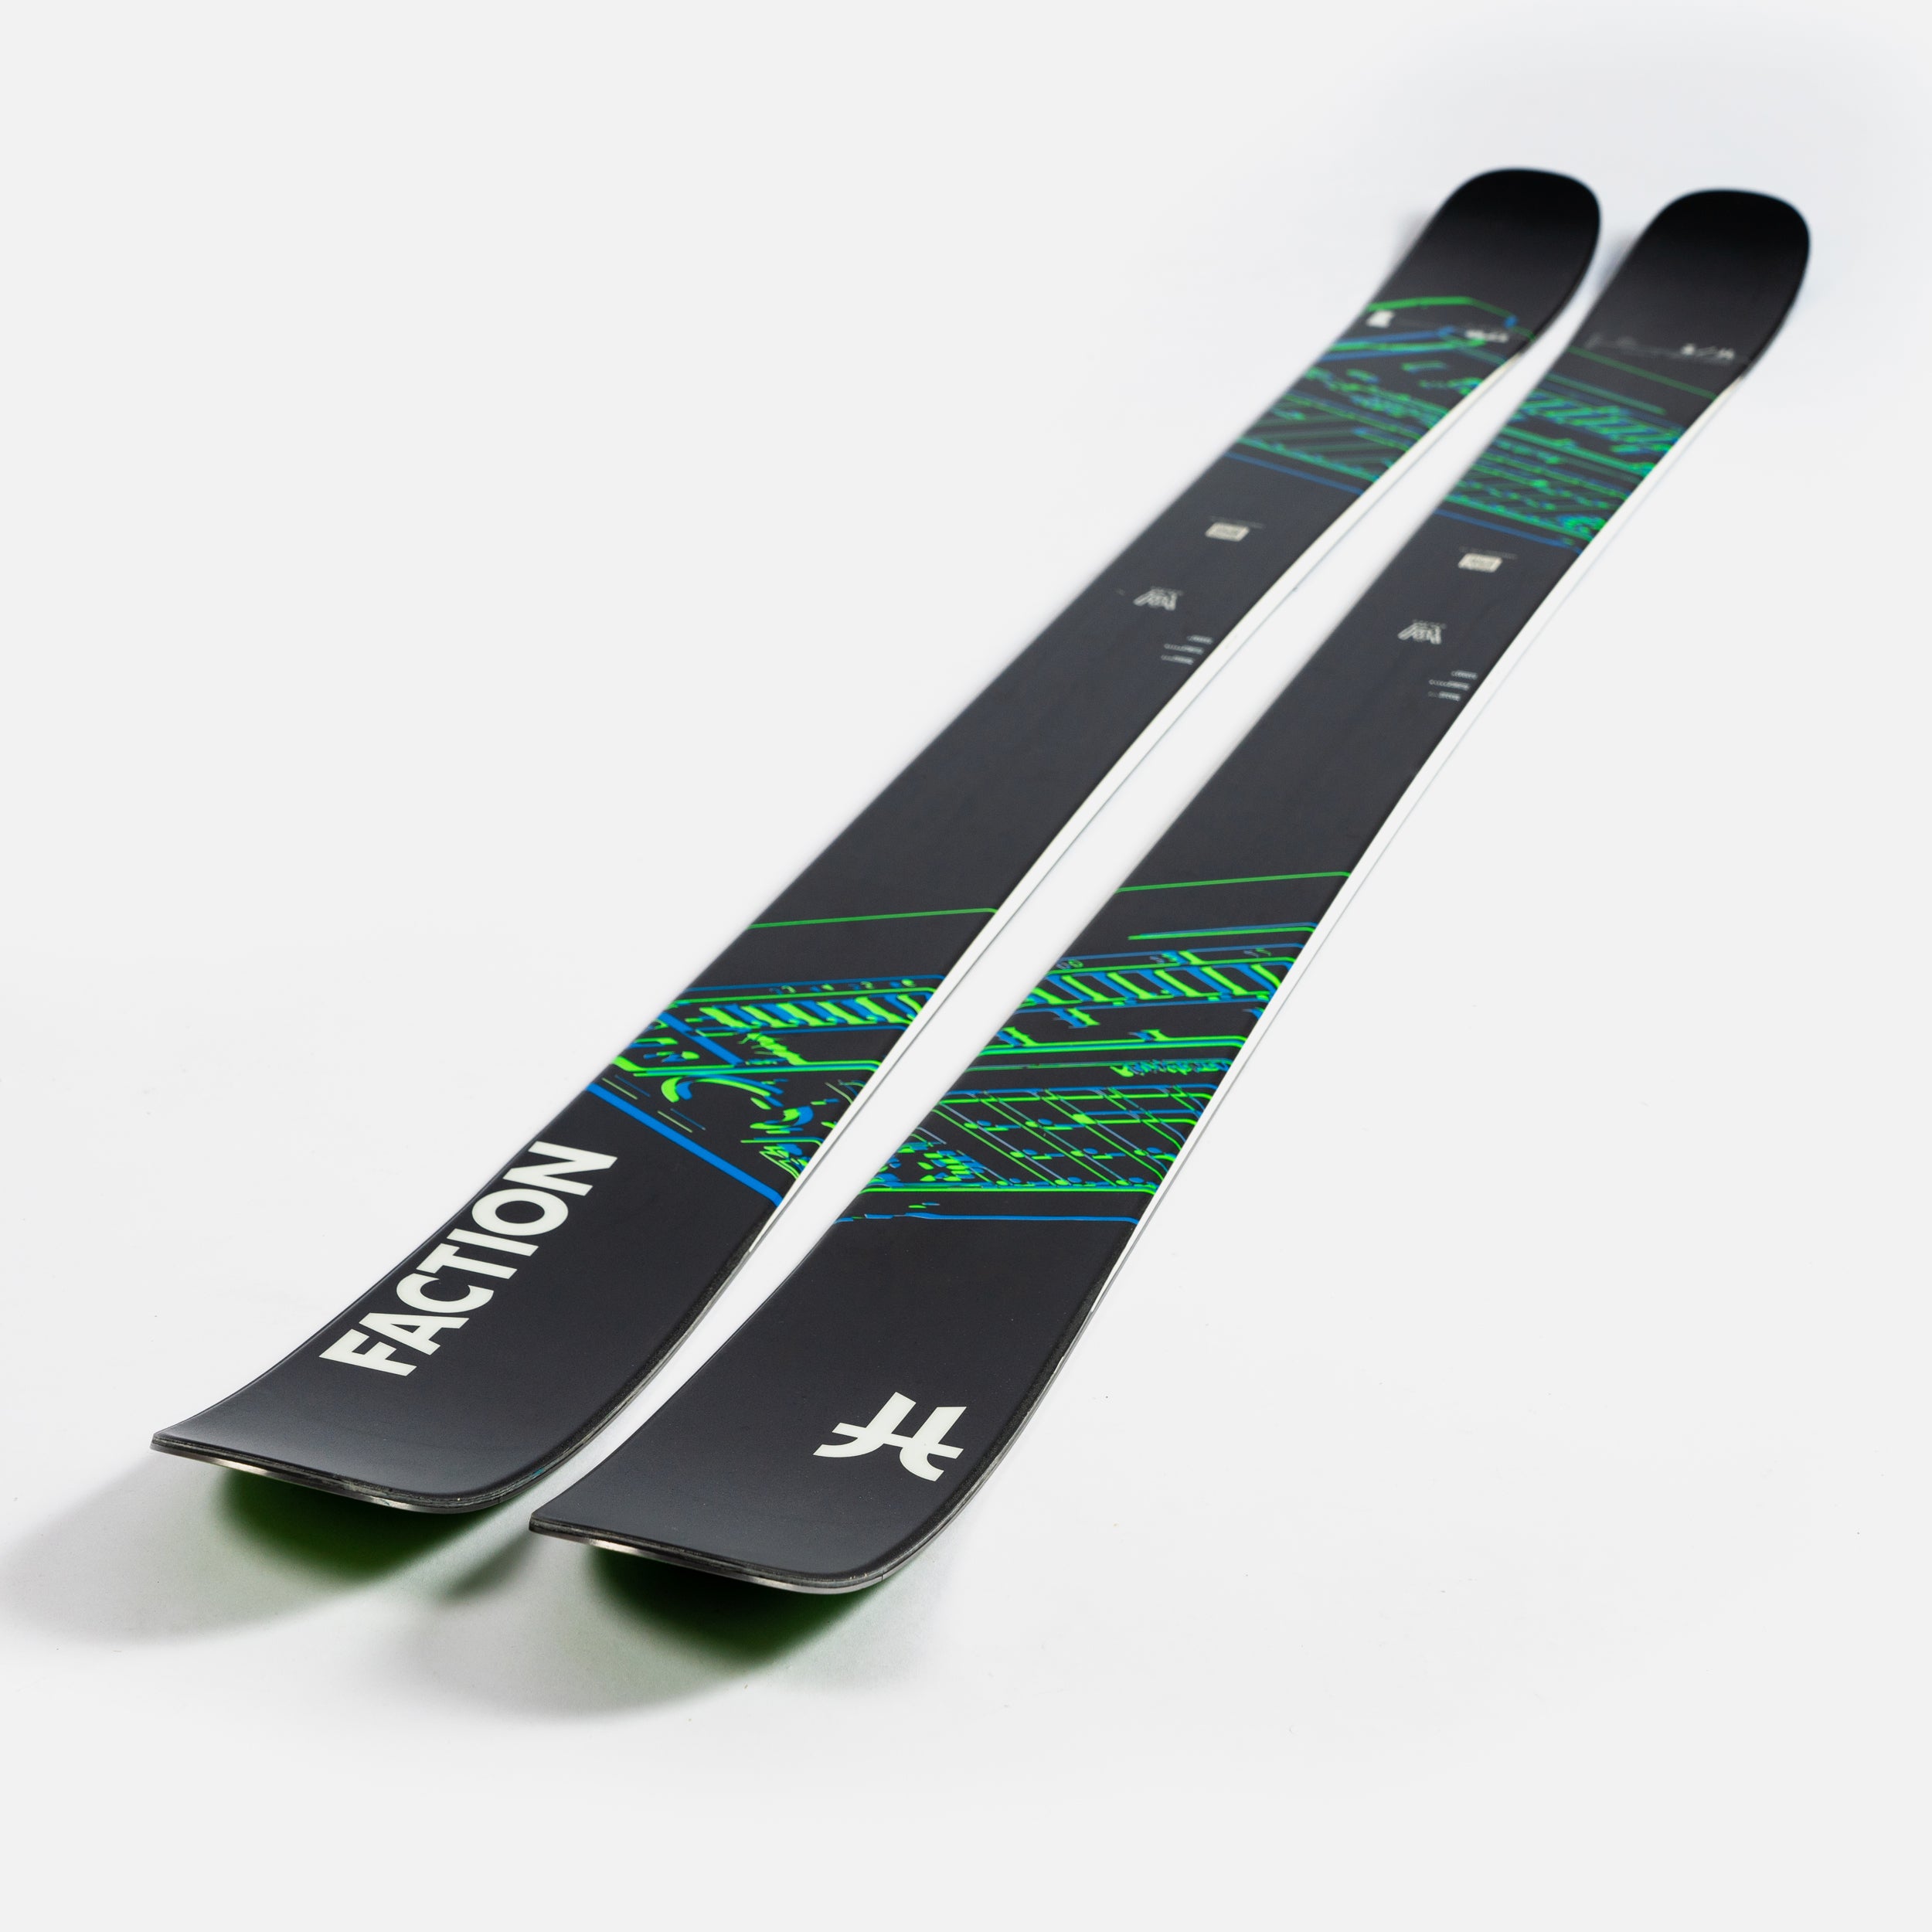 Faction Prodigy 0 | 2024 Twin-Tip Piste Ski – Faction Skis